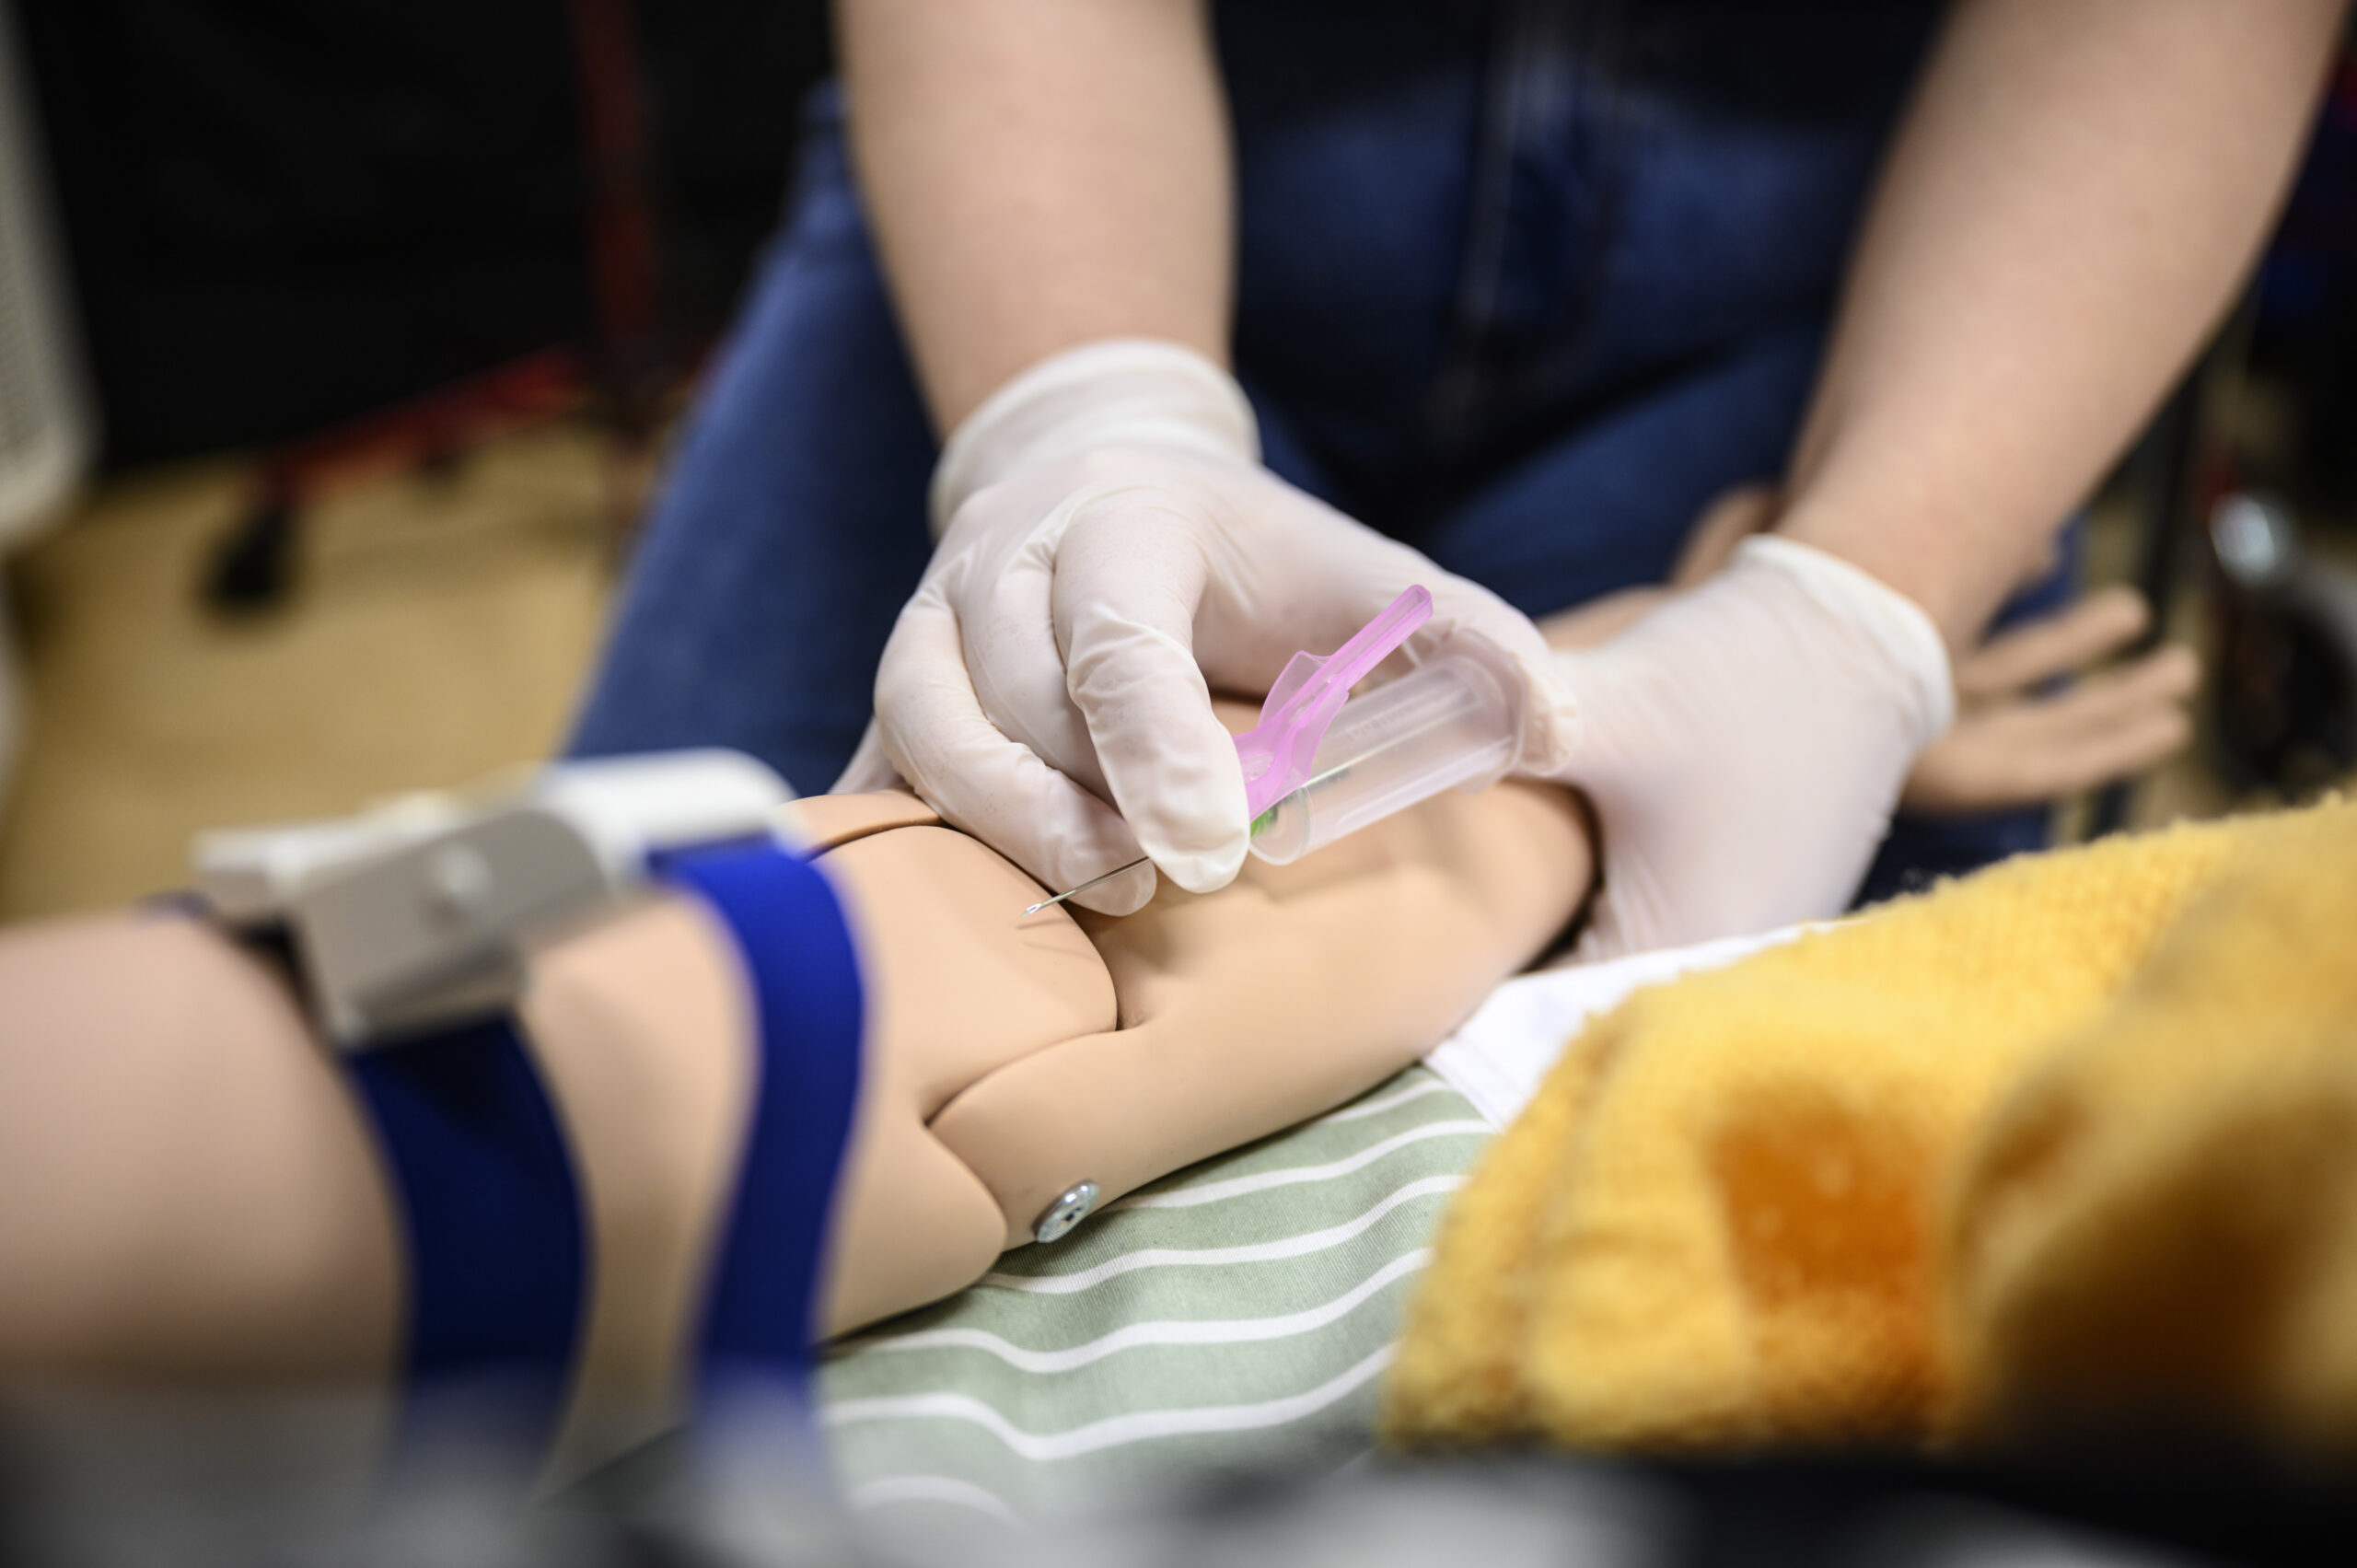 Undesköterskestuderande övar att ta blodprov på en attrapp docka